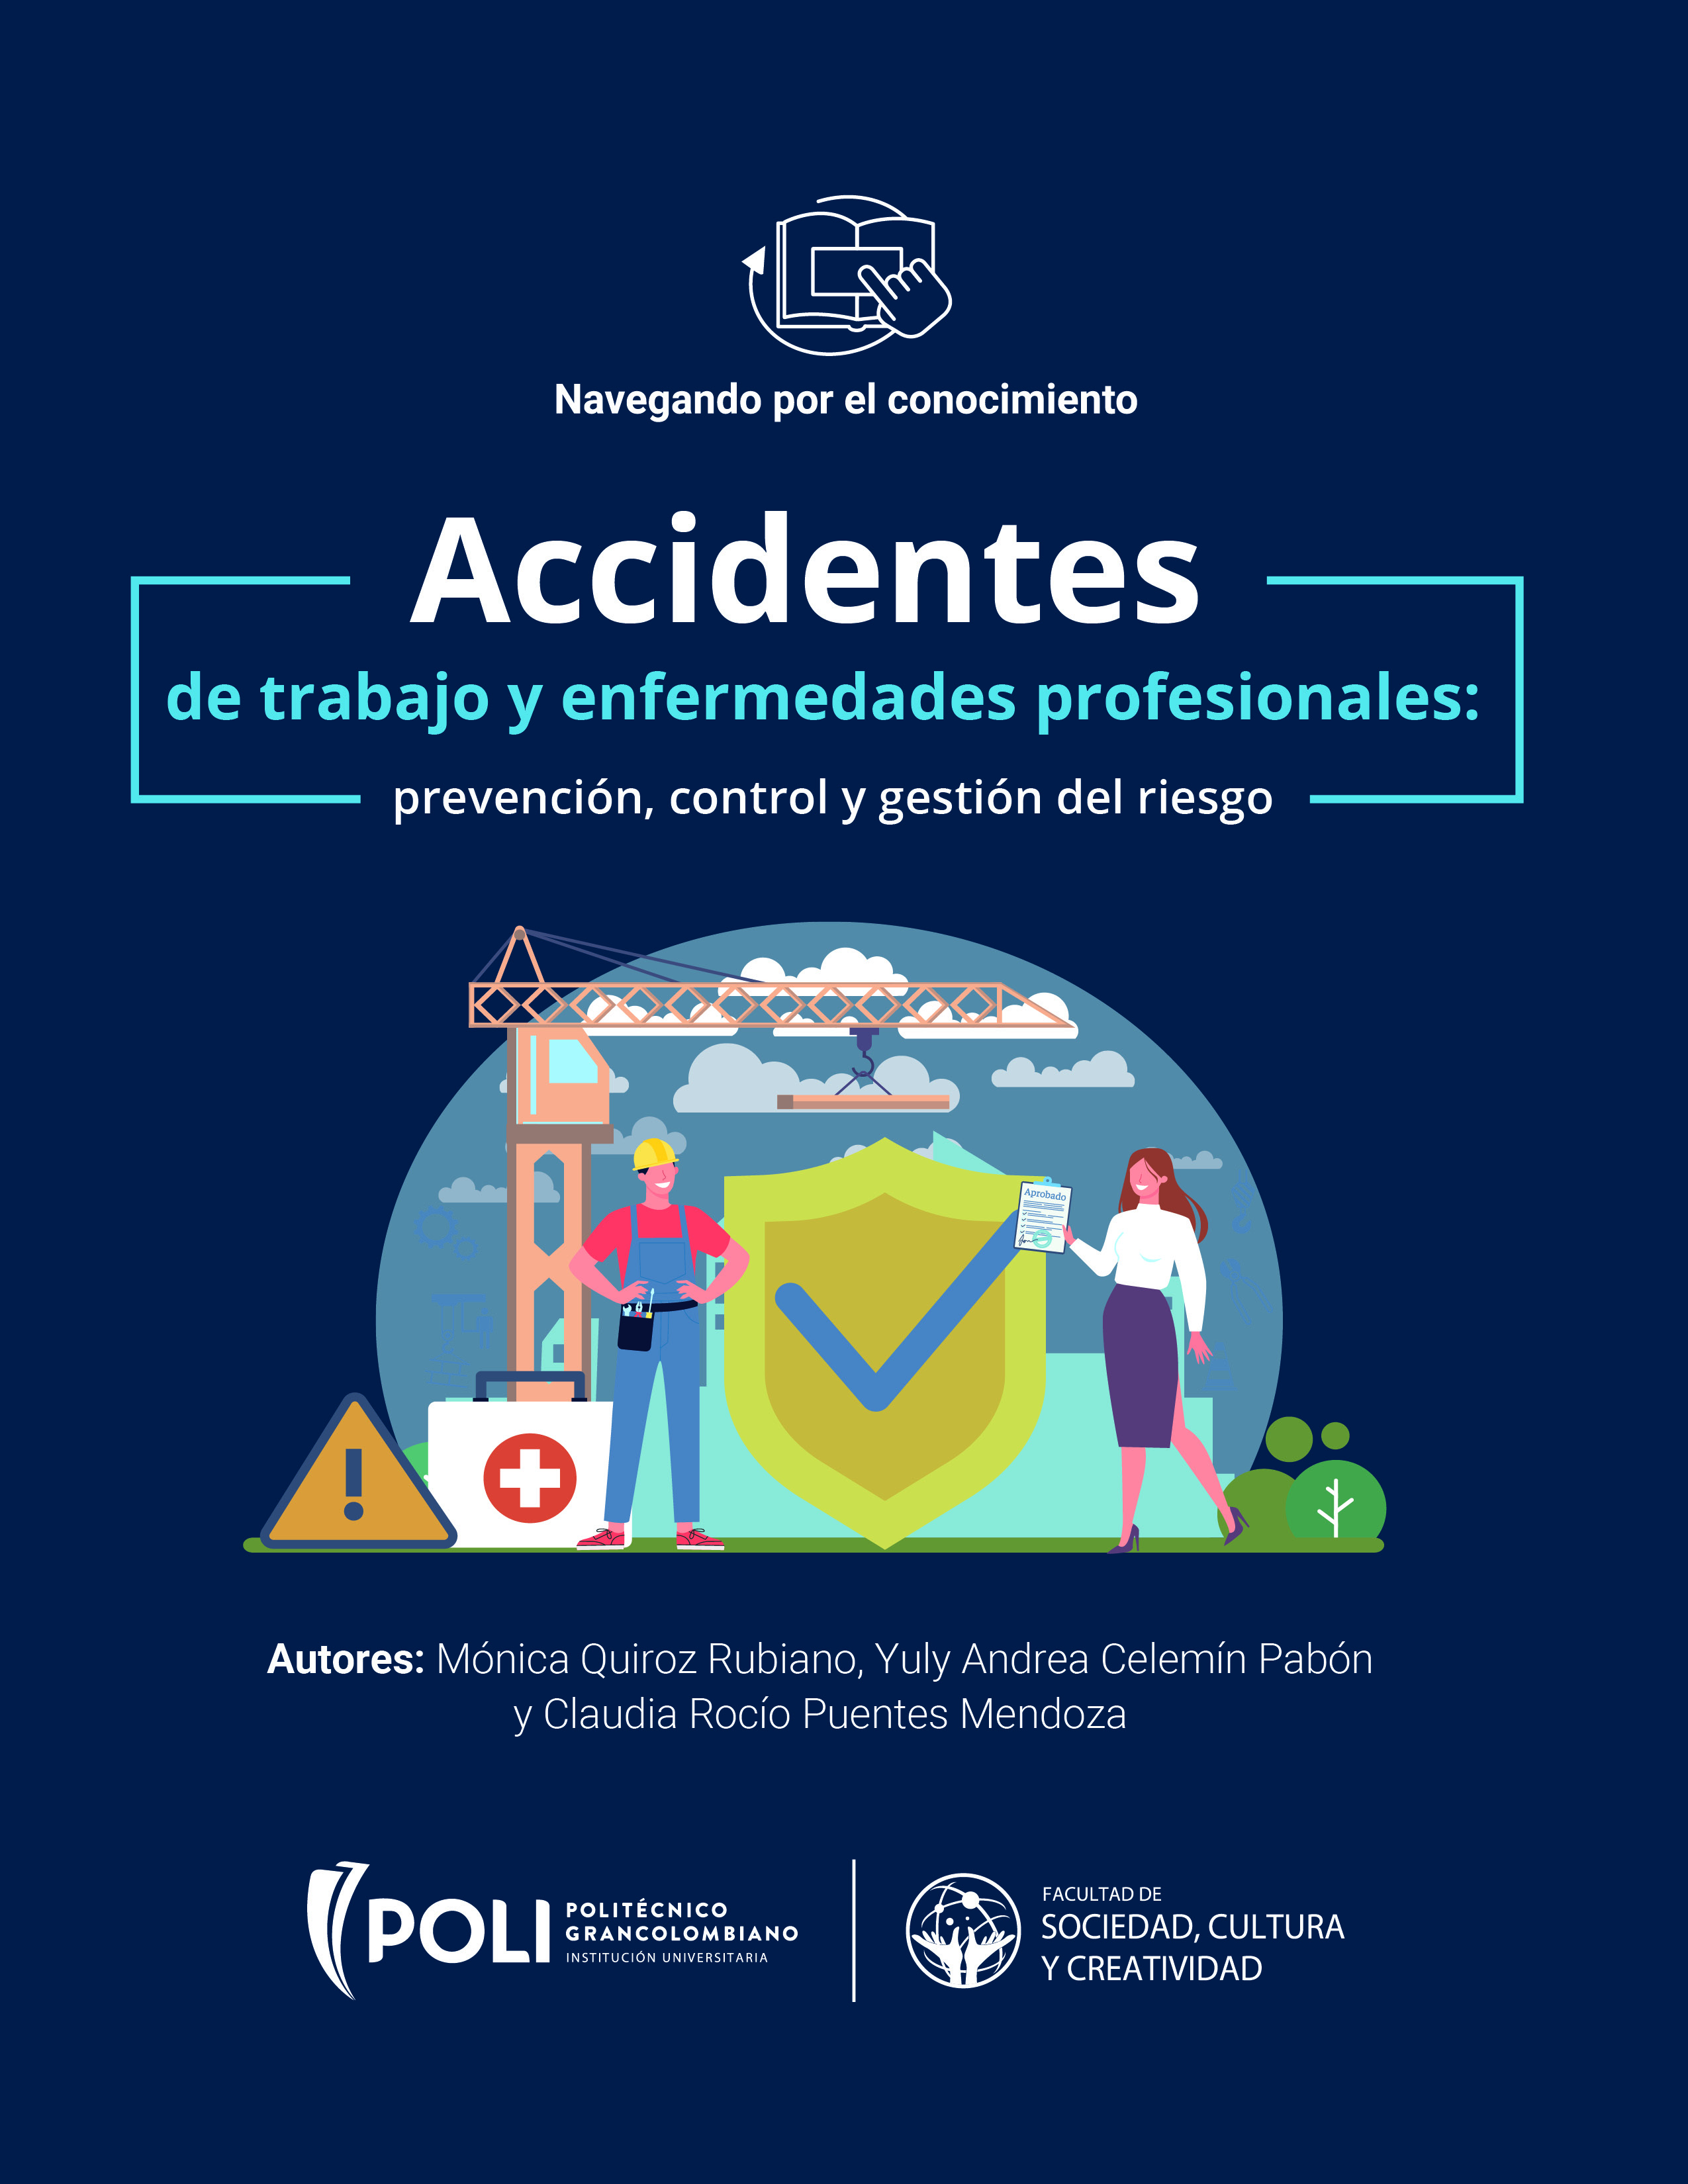 Accidentes de trabajo y enfermedades profesionales: prevención, control y gestión del riesgo